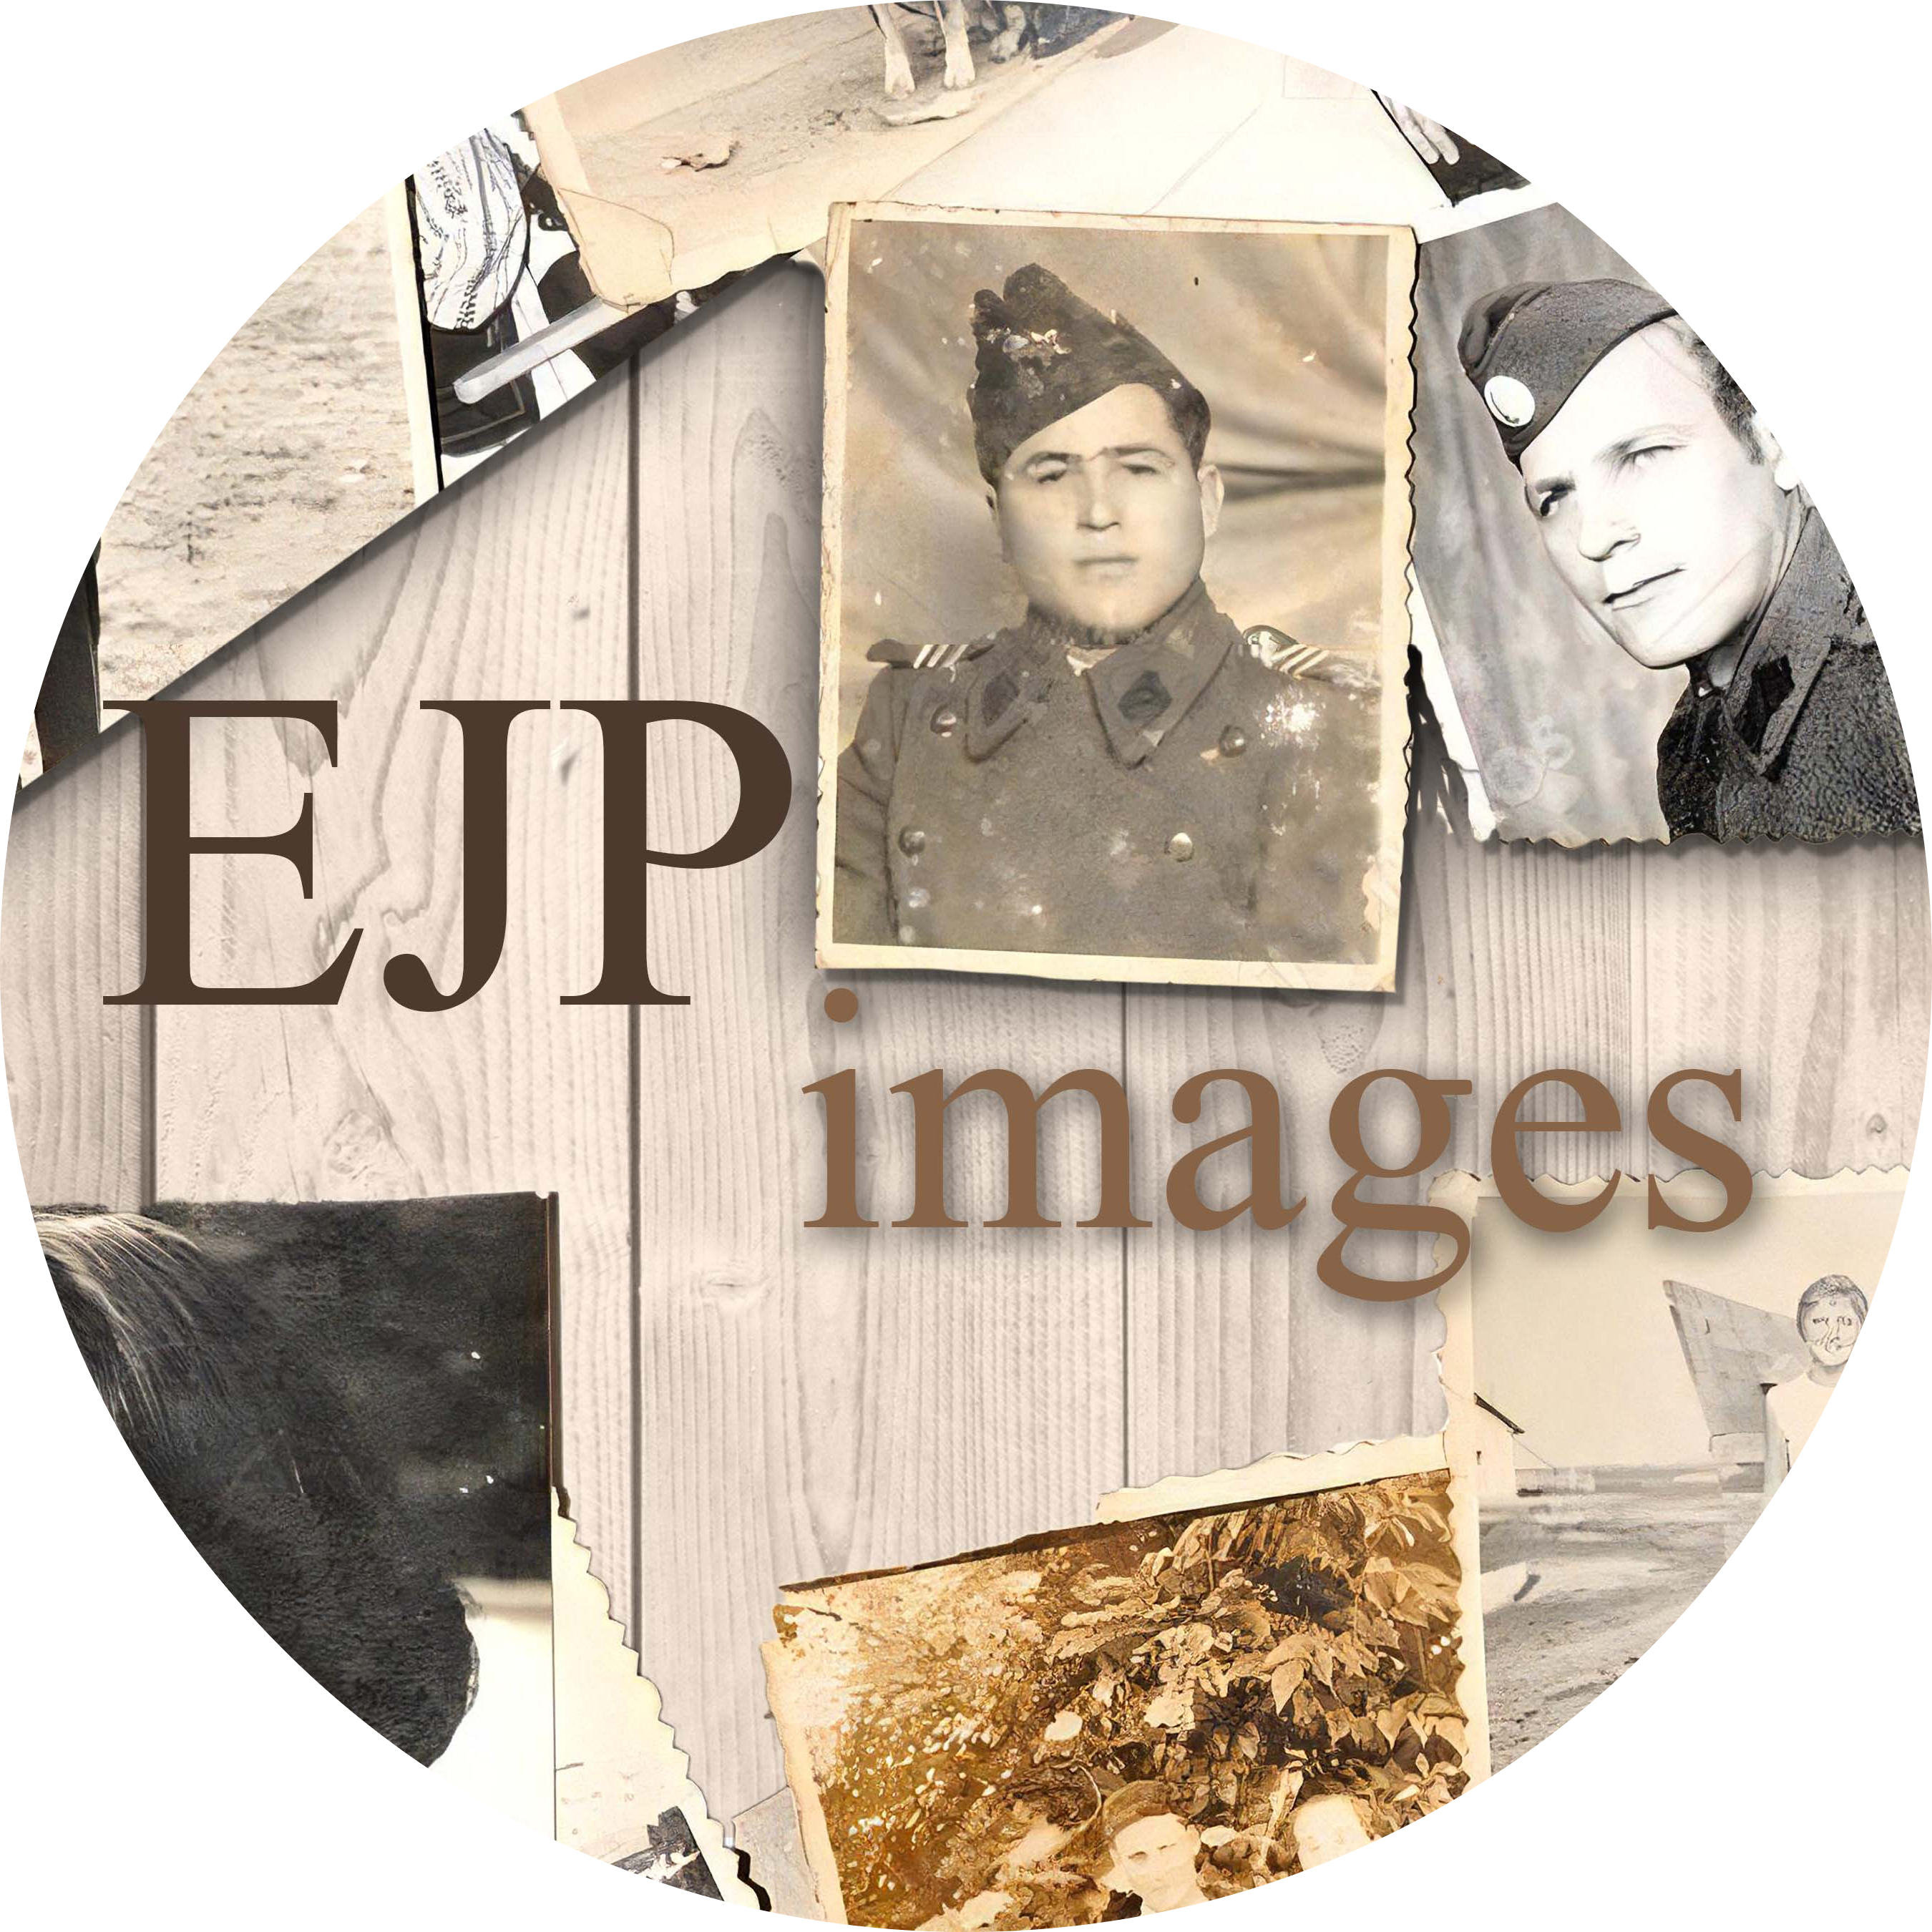 EJP Images